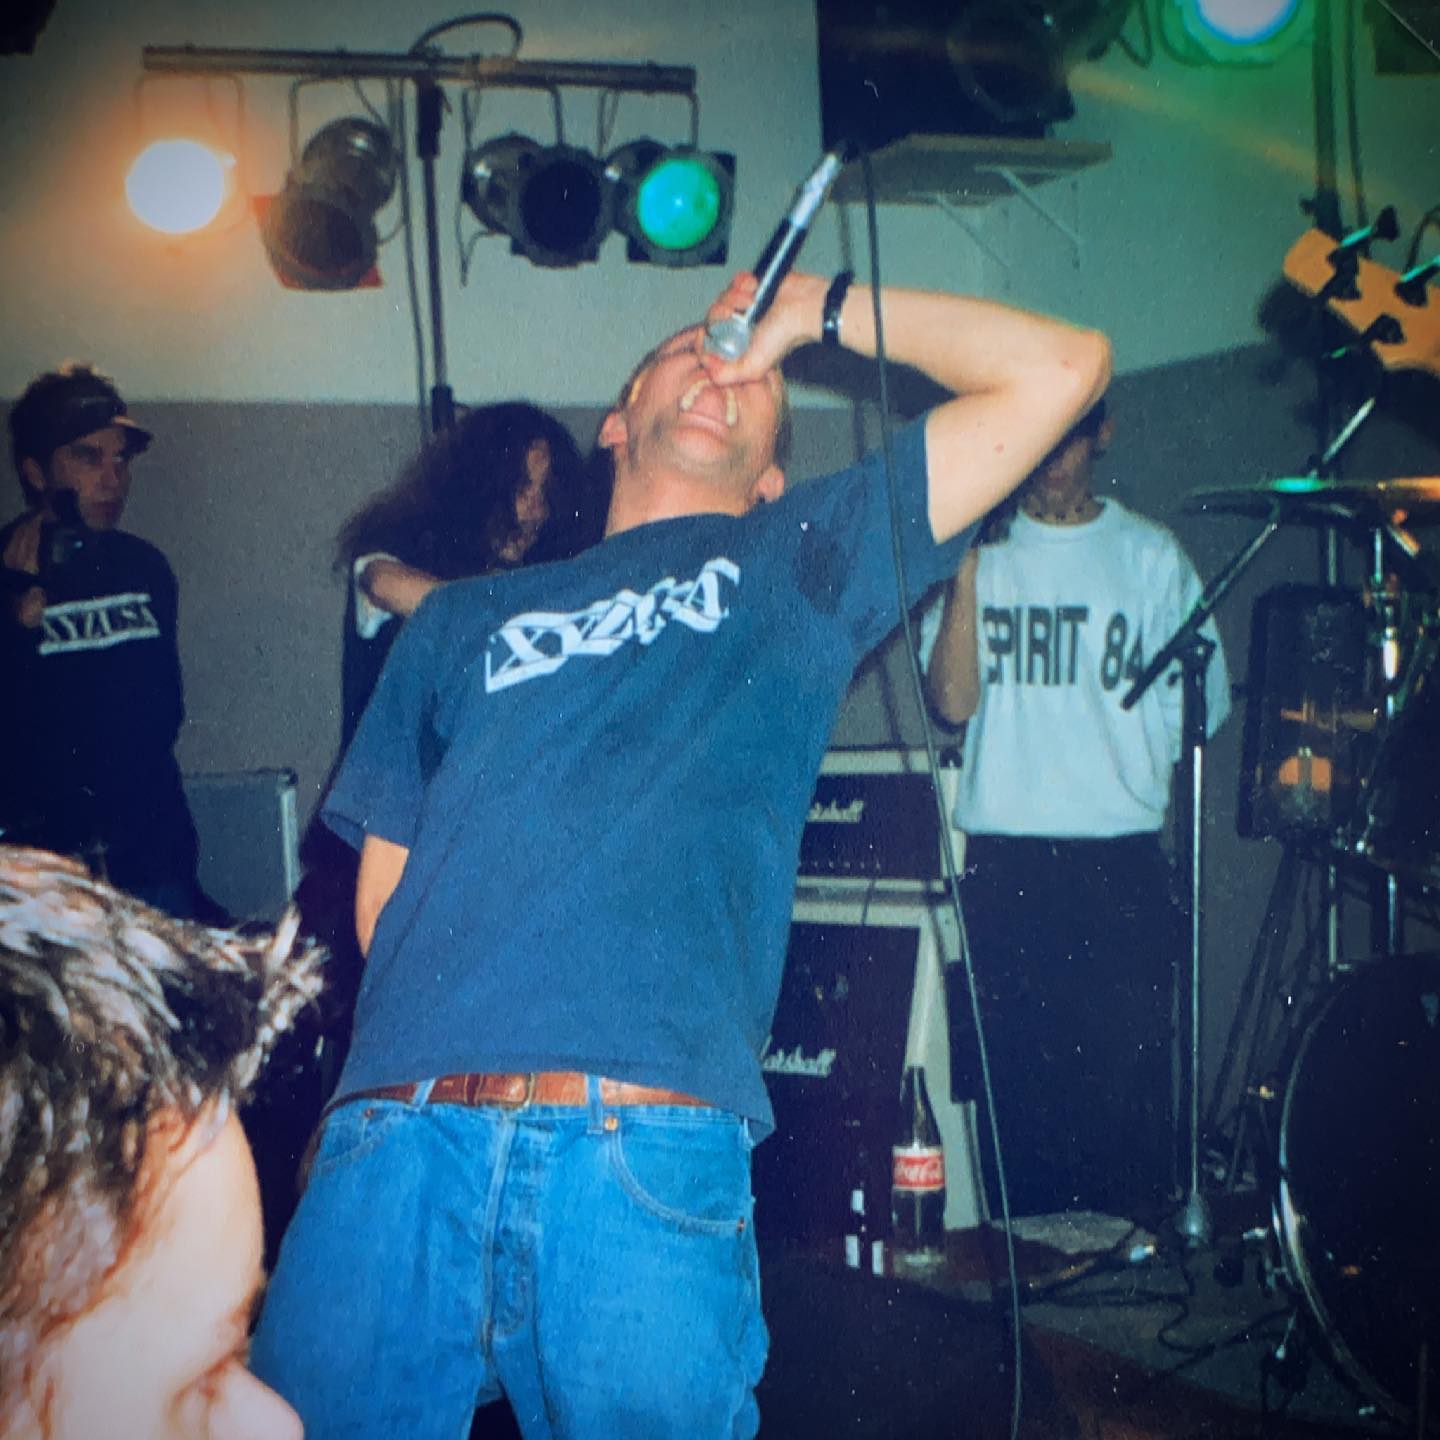 Reveal - de Poort Dongen (NL) - 1 November 1997 #hardcore #gigpic by @twentylandcrew